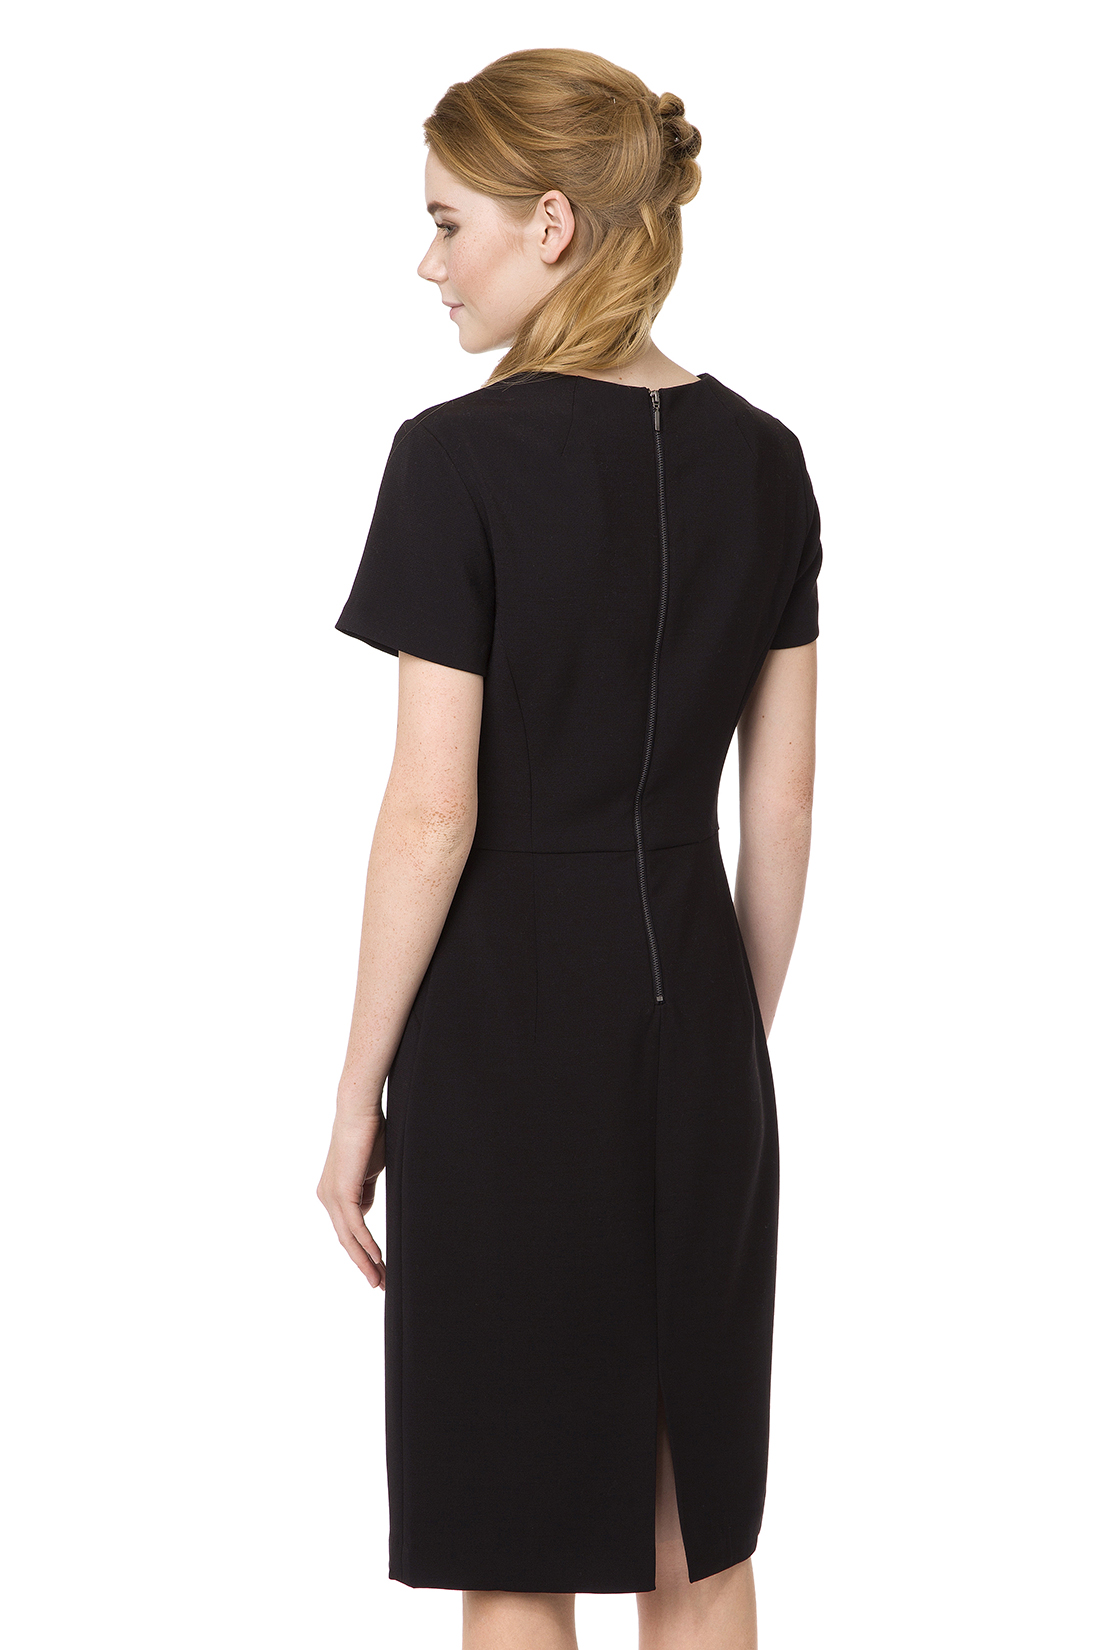 Приталенное чёрное платье (арт. baon B457072), размер L, цвет черный Приталенное чёрное платье (арт. baon B457072) - фото 2